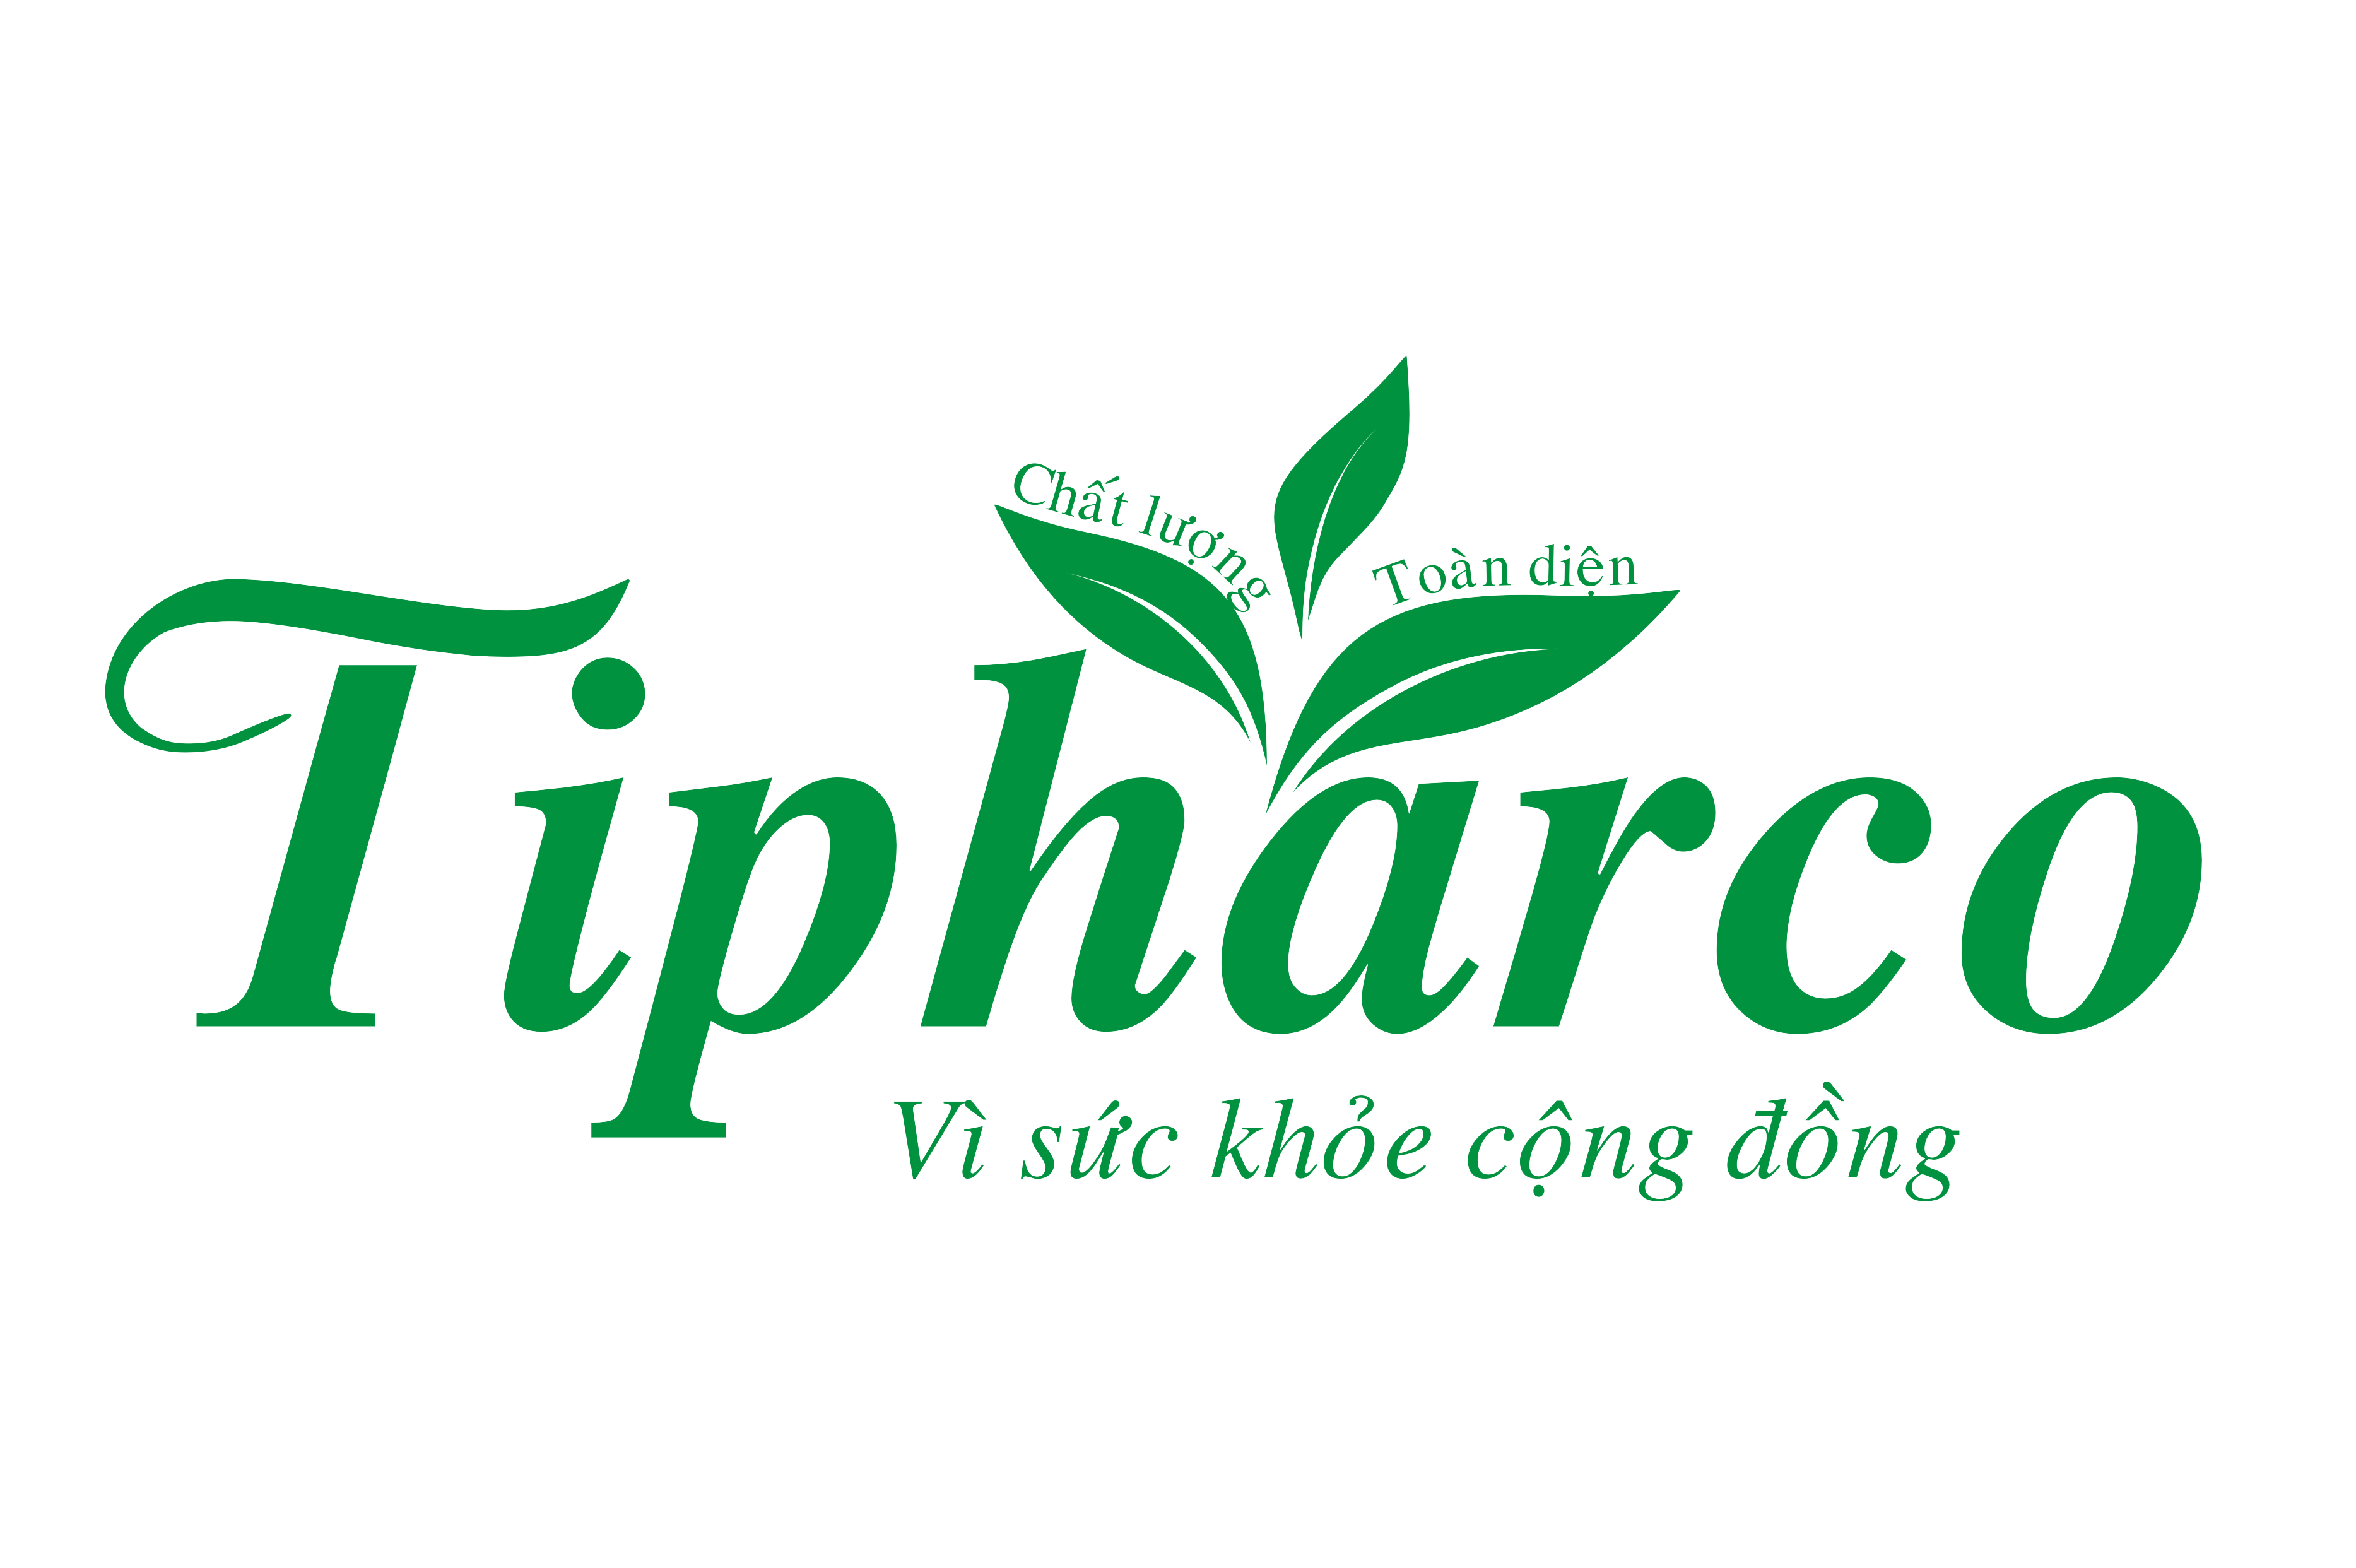 Công ty Cổ phần Dược phẩm Tipharco